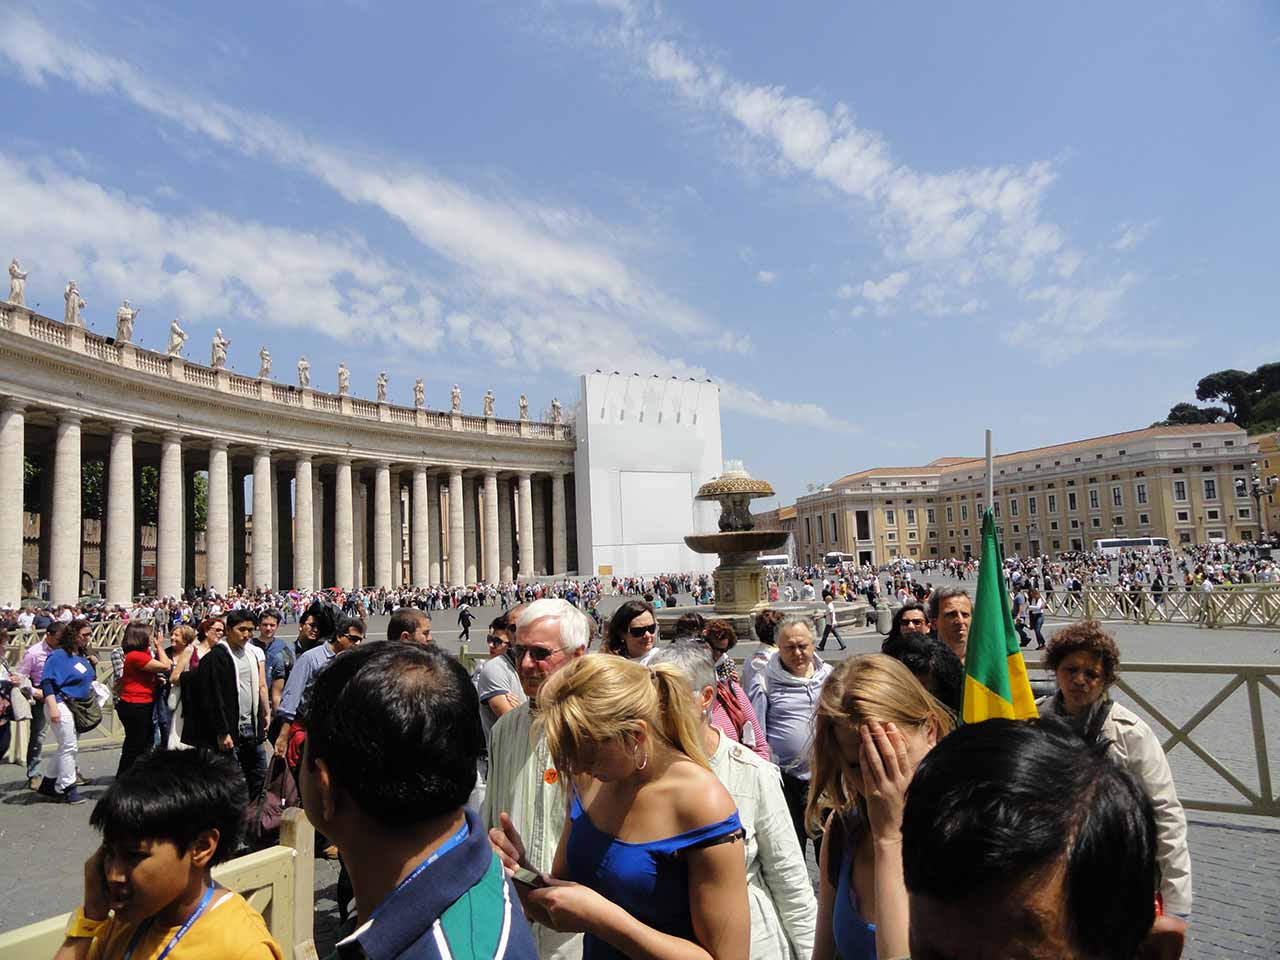 Vatican Square